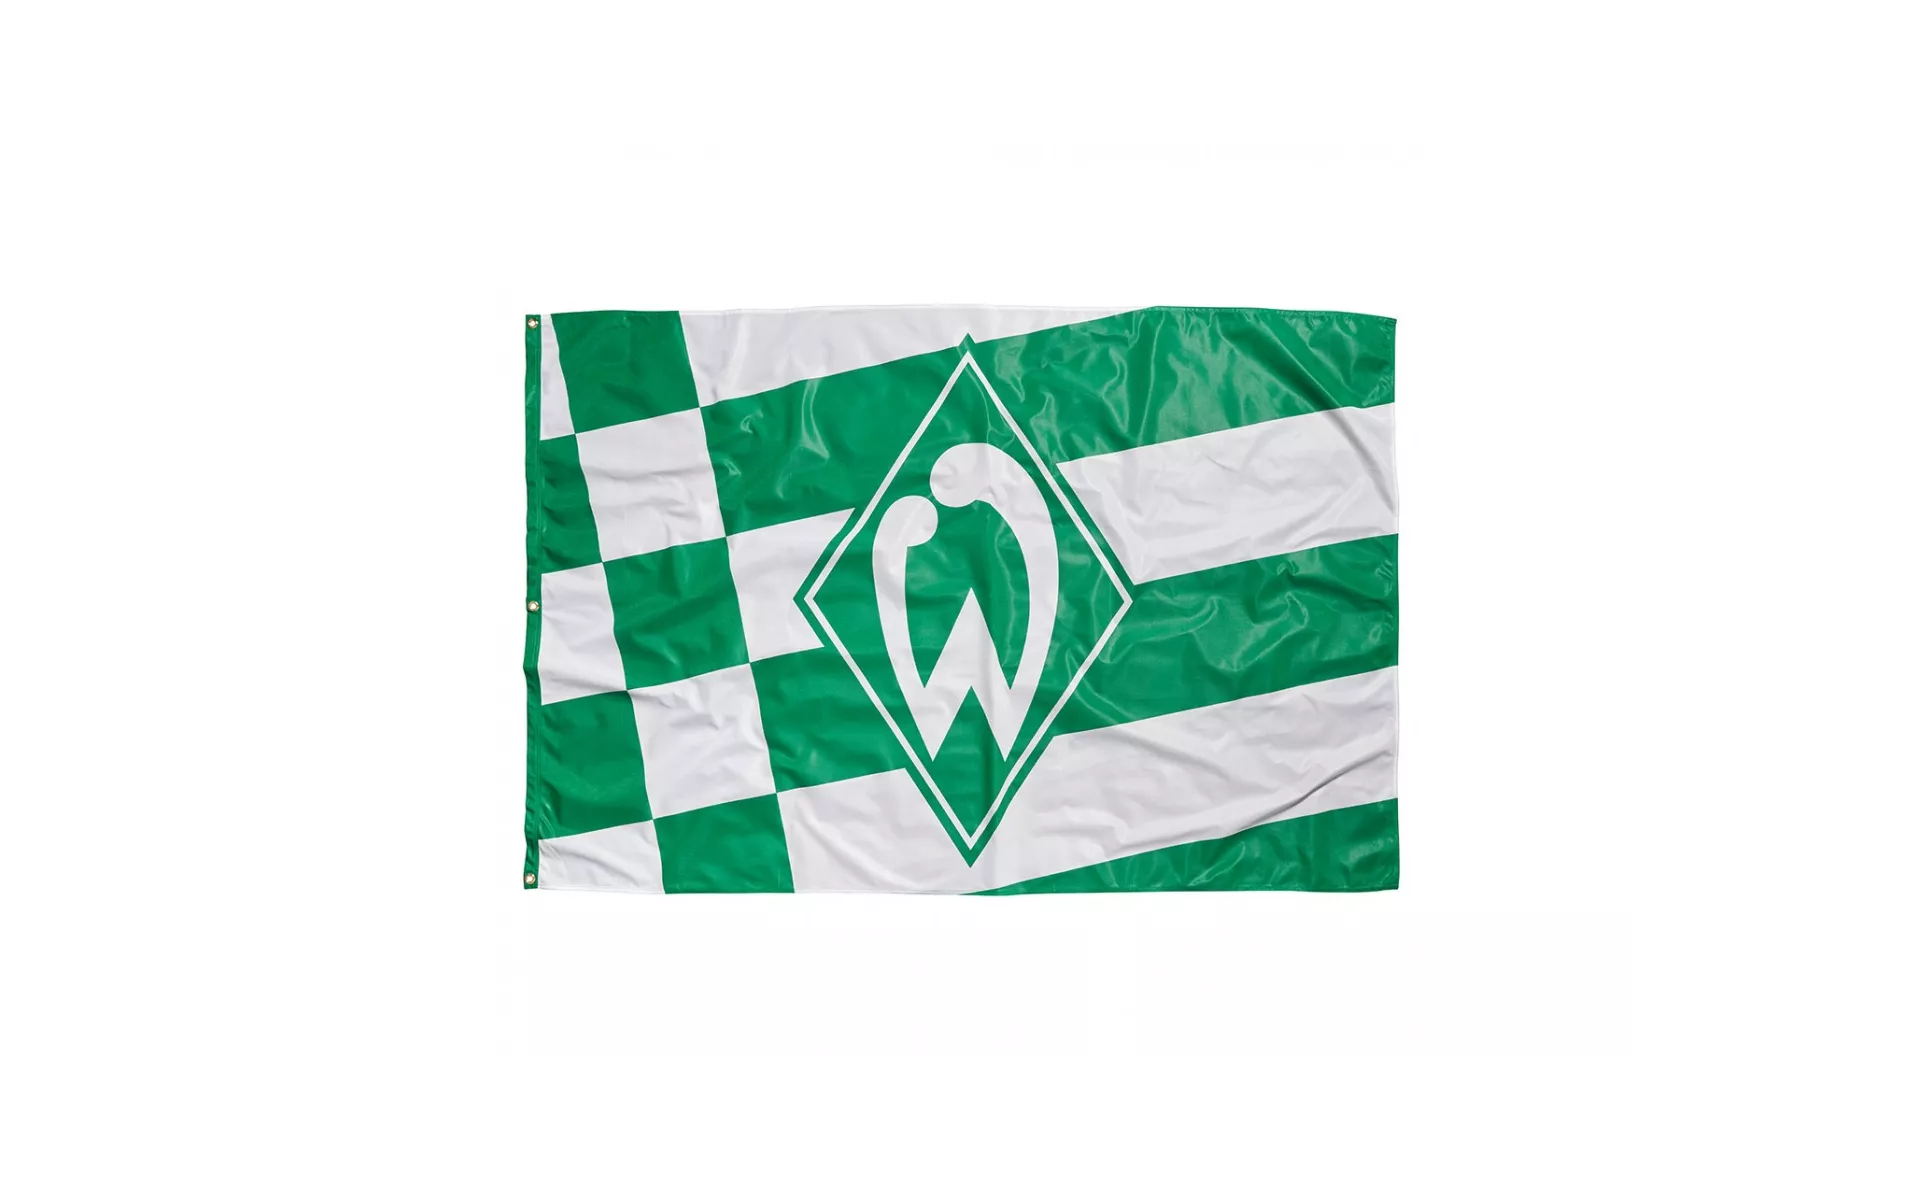 SV Werder Bremen Hissfahne kl Raute 180x120cm 